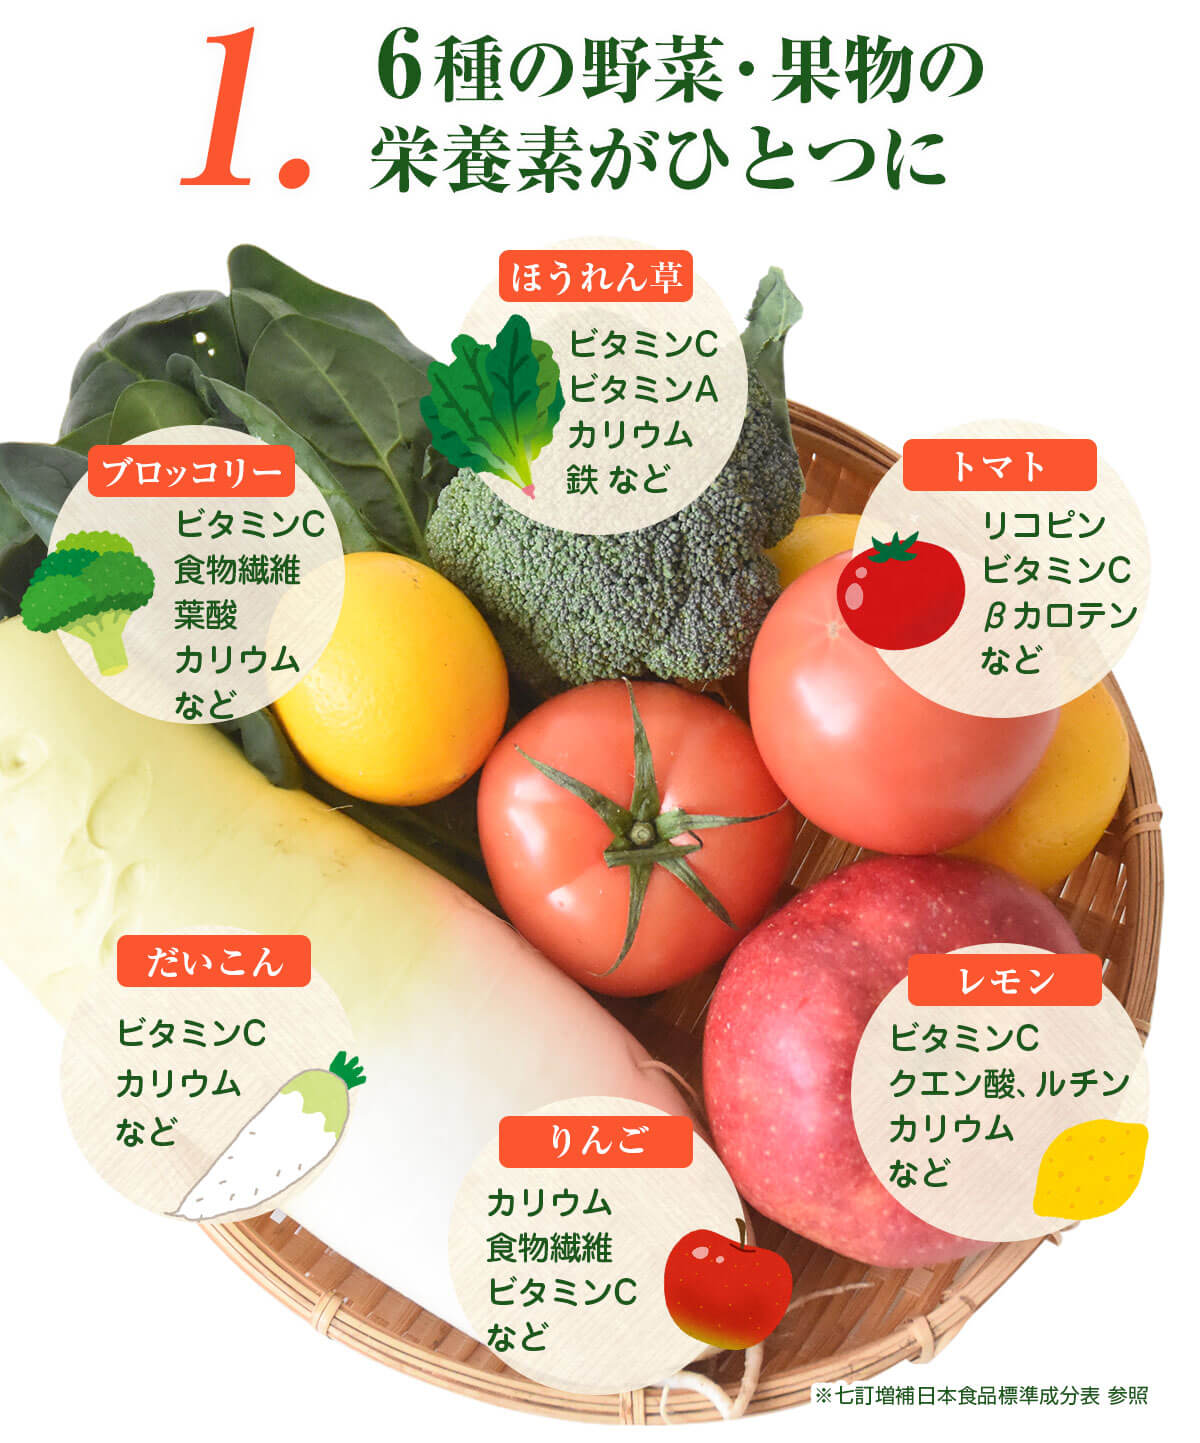 6種の野菜・果物の栄養素がひとつに